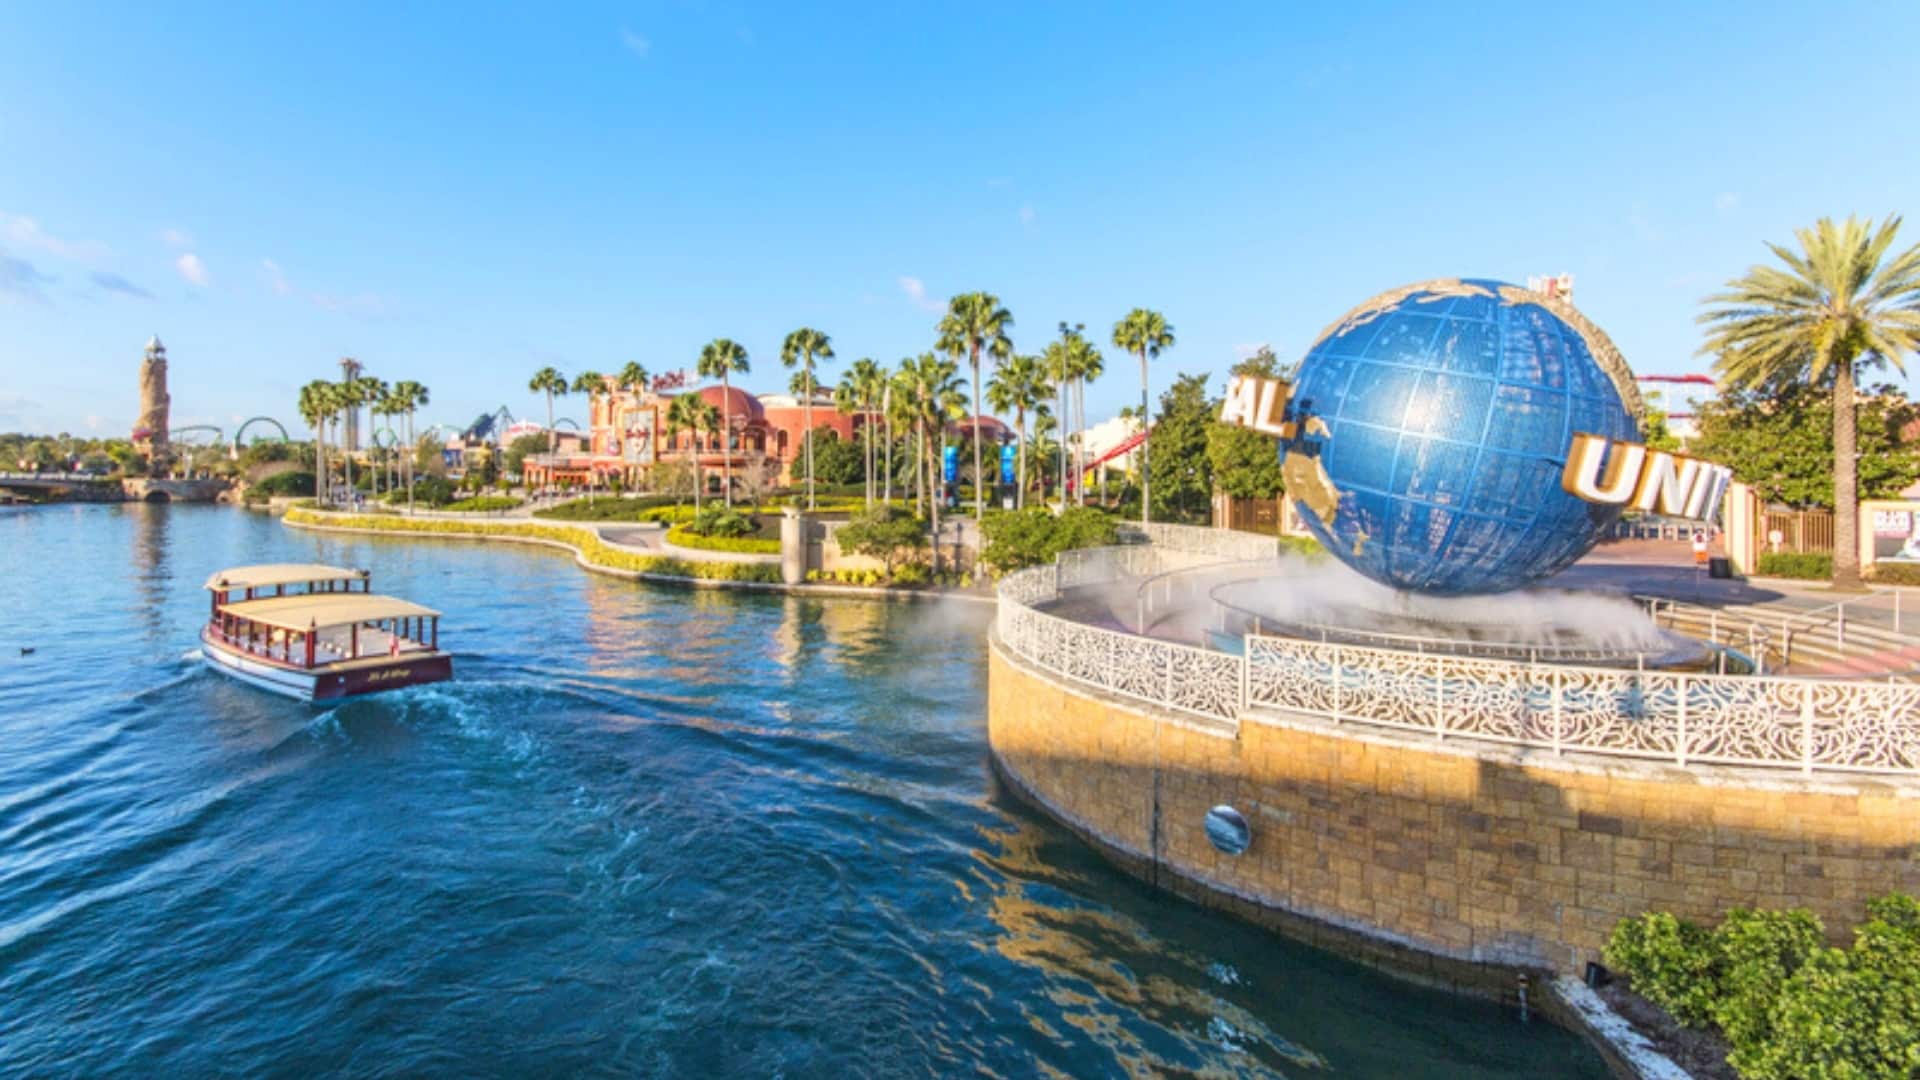 Vacation Rentals near Universal Studios in Orlando